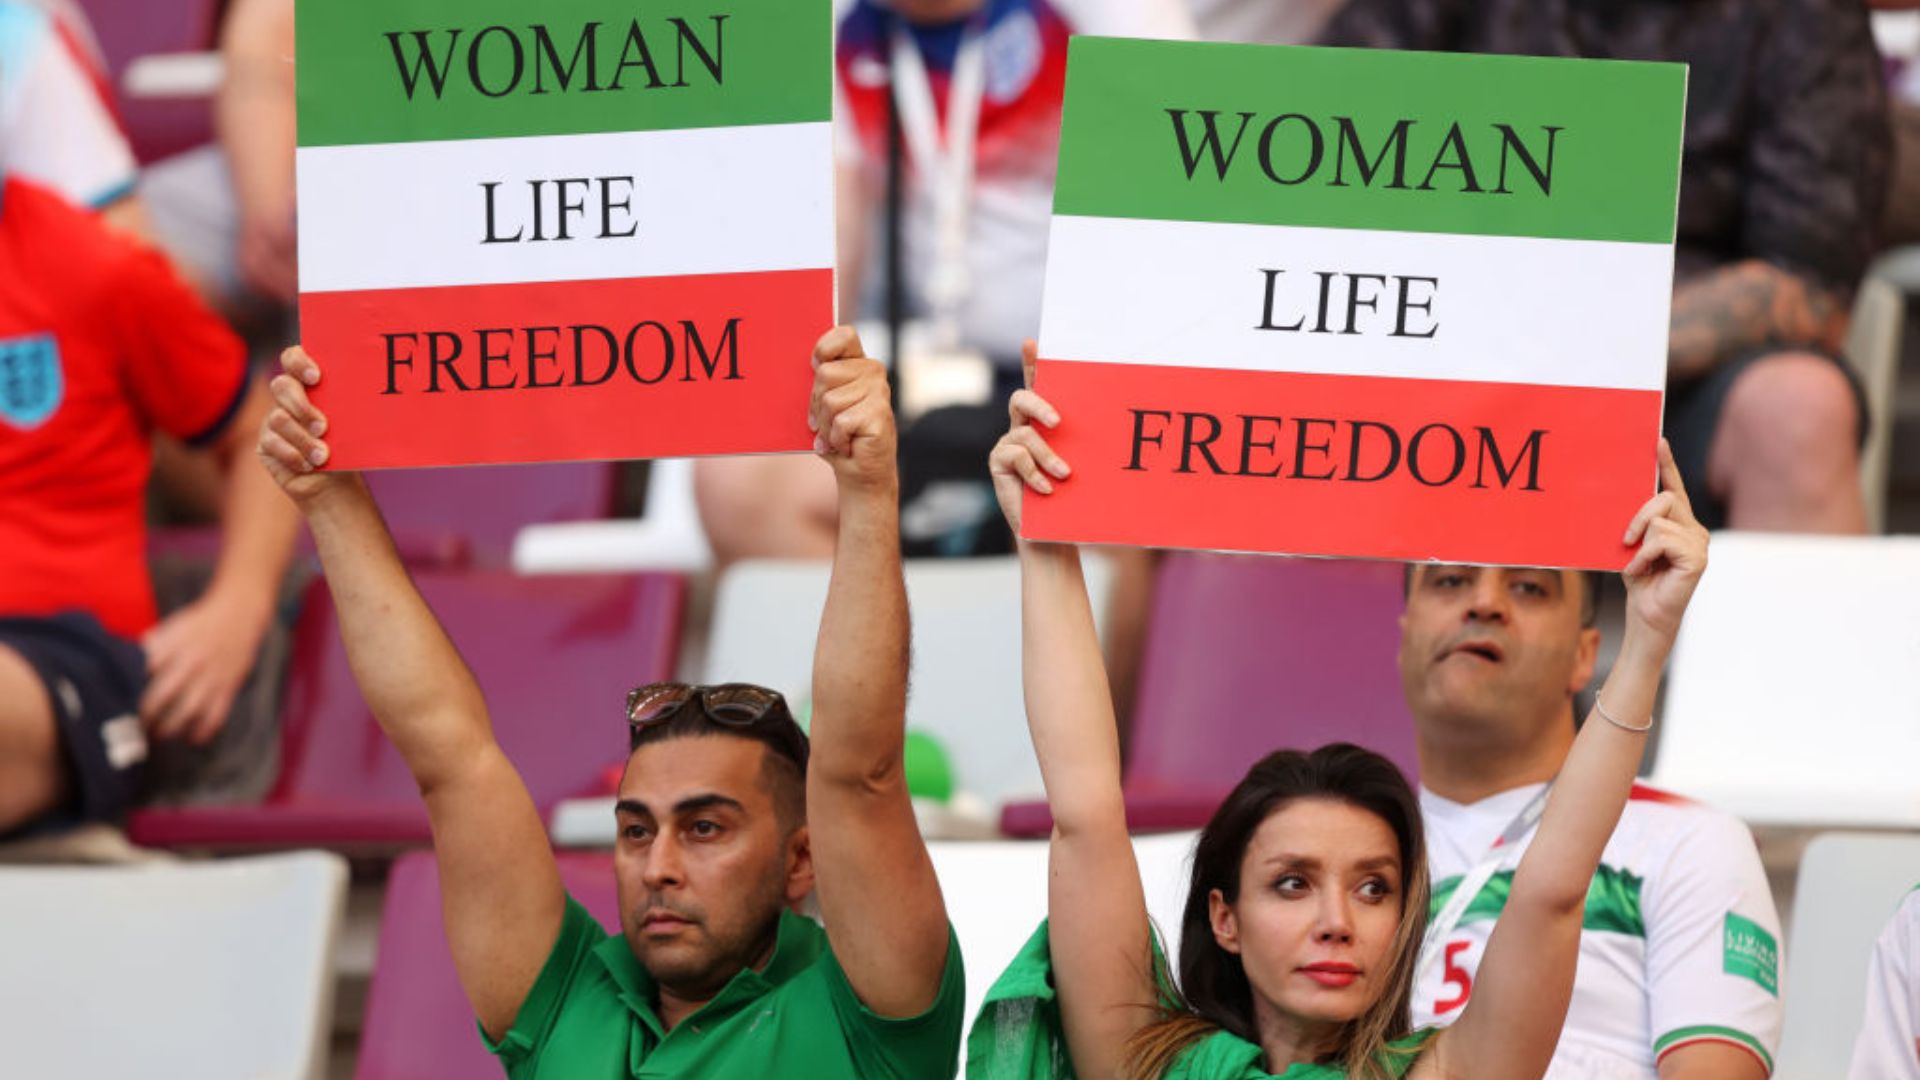 Técnico do Irã critica protestos de torcedores em estádio: Não